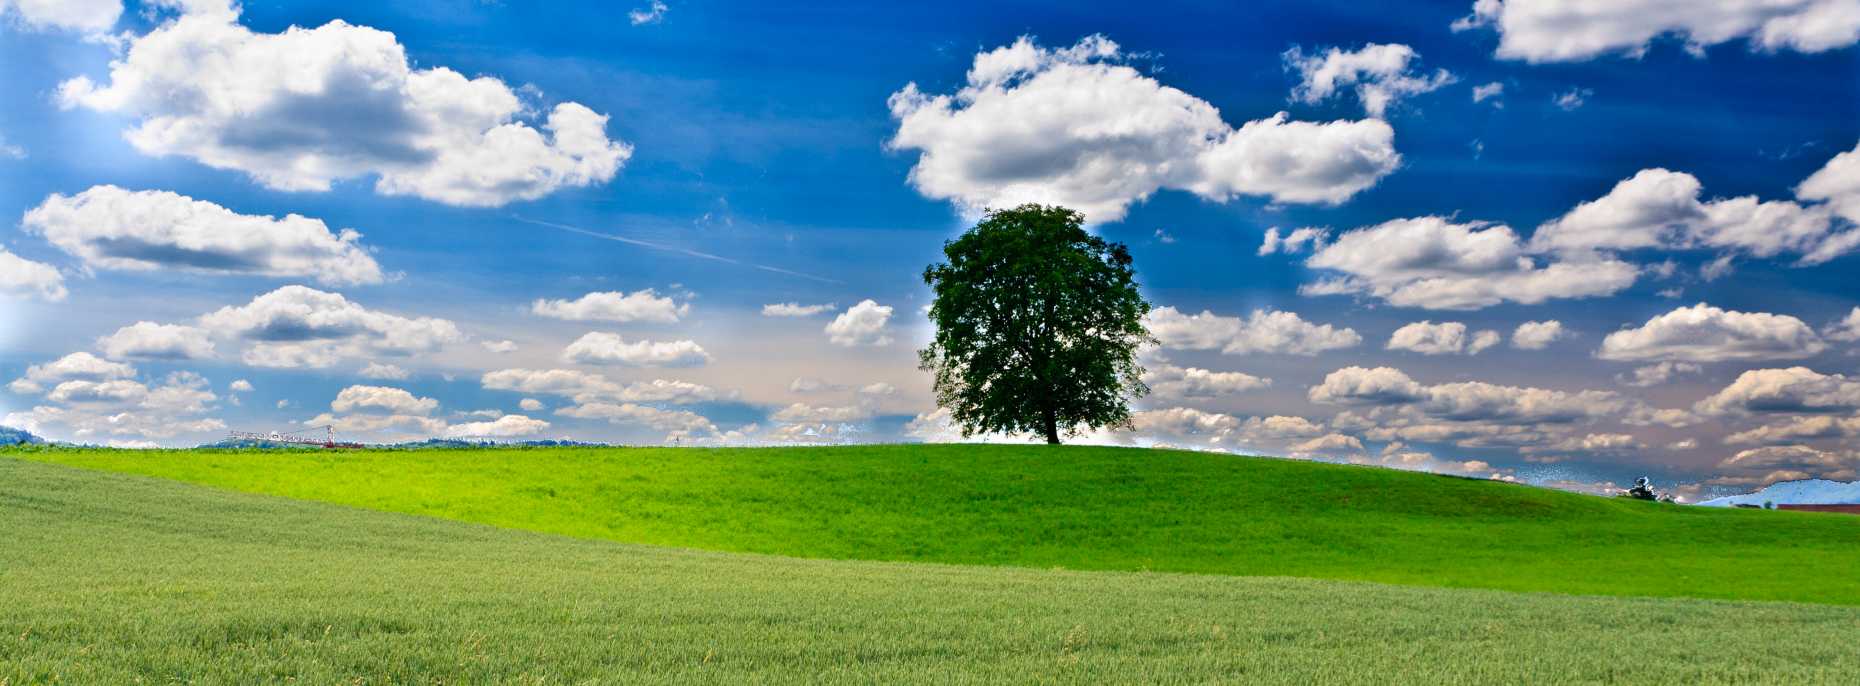 Wiese, Baum am Horizont, blauer Himmel mit vorüberziehenden Wolken